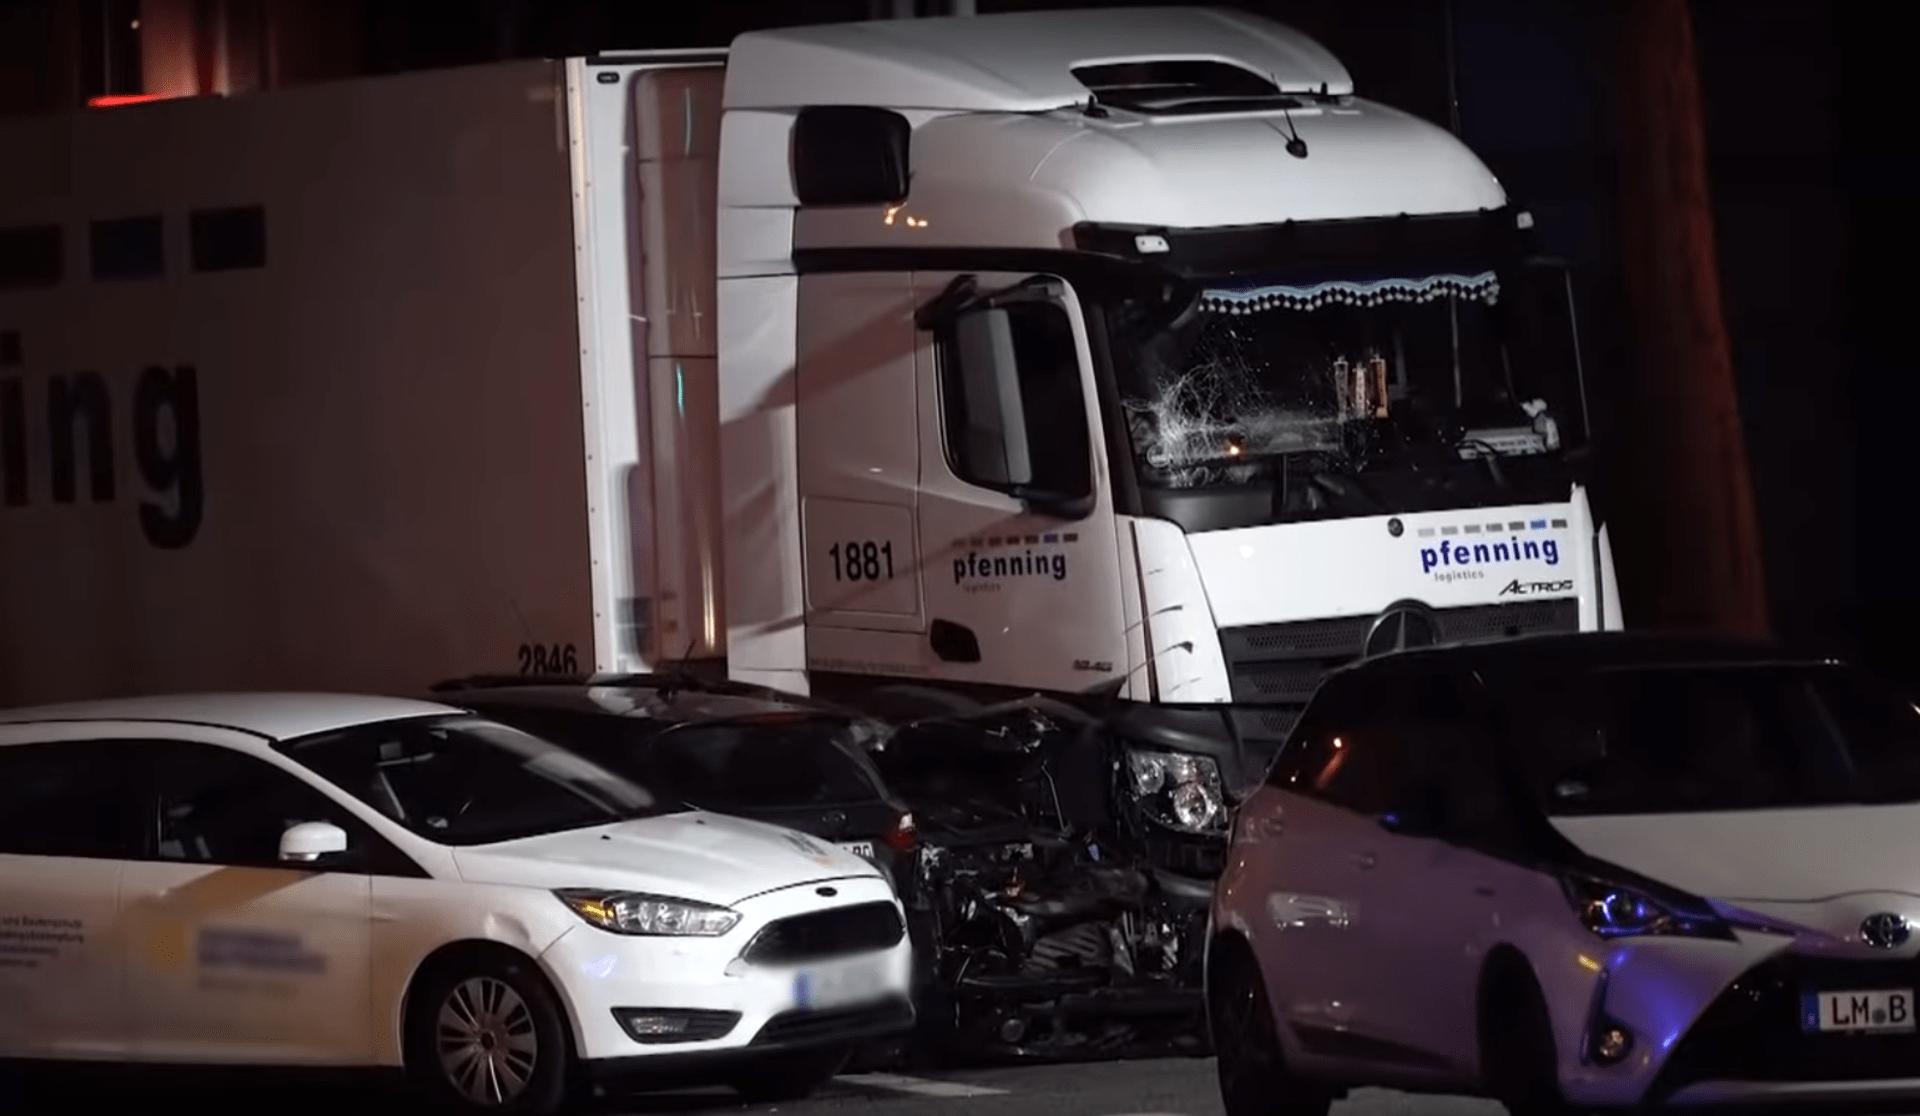 Kamion najel v německém Limburgu do několika aut